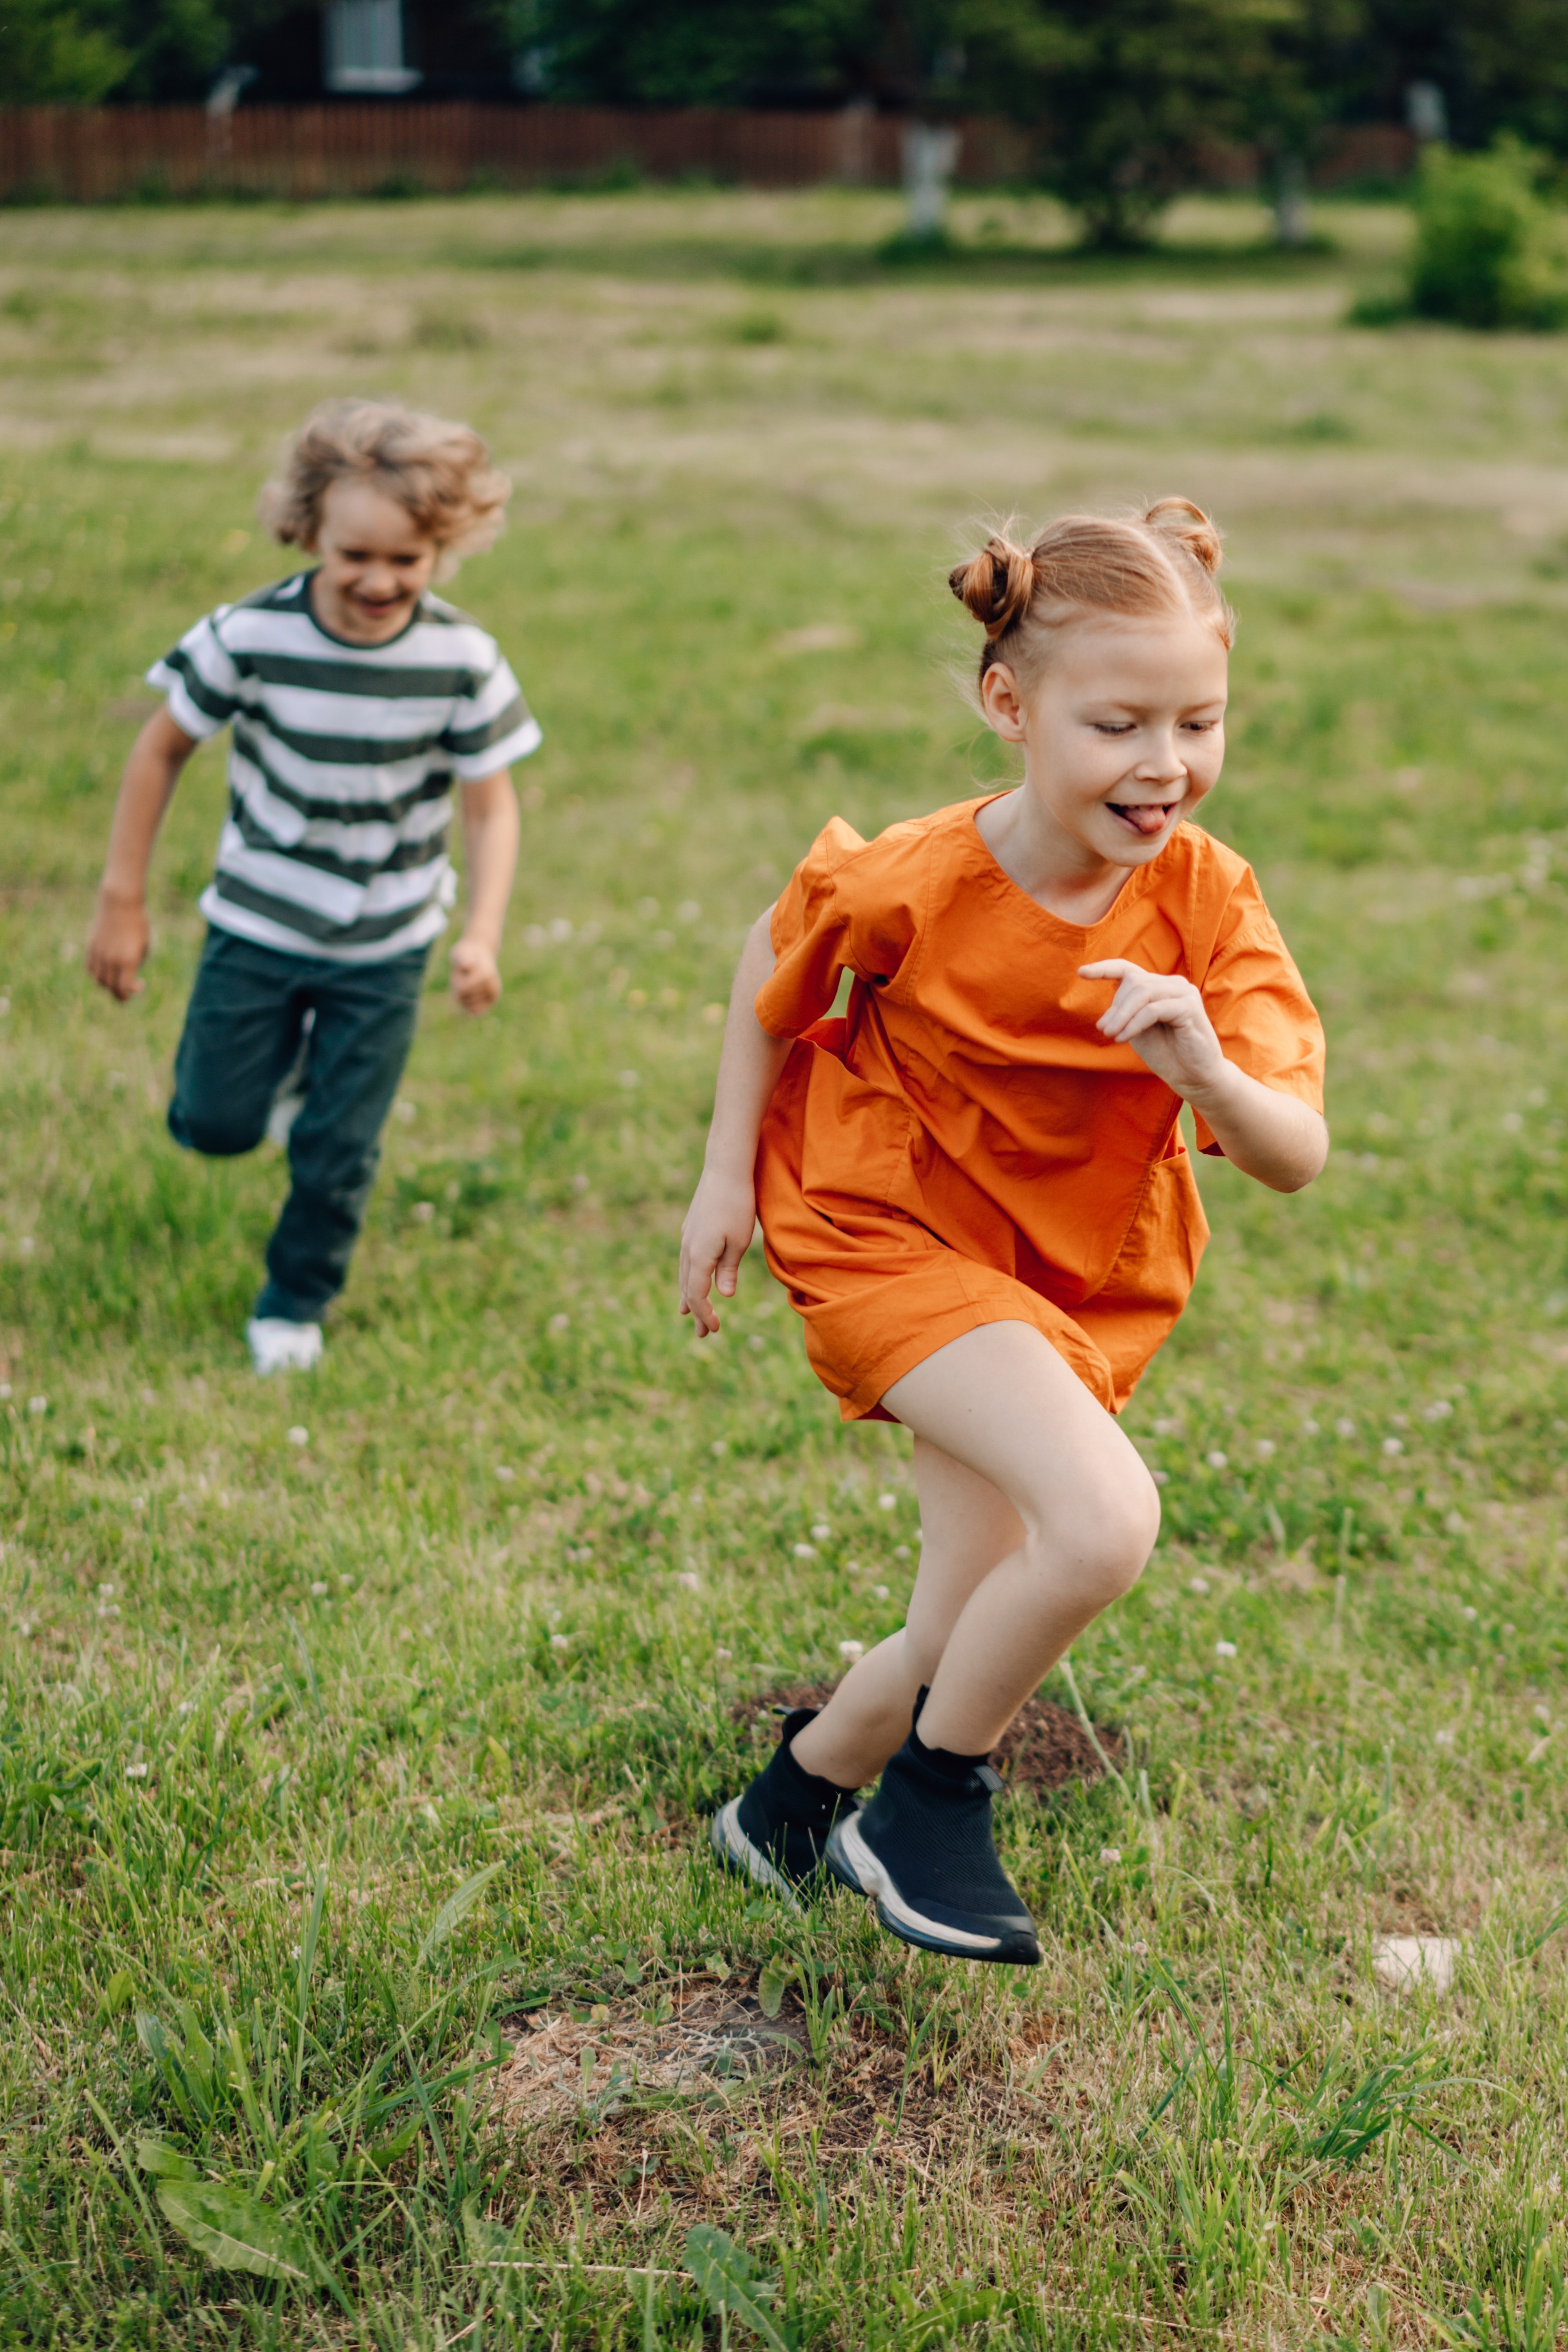 Die beiden Kinder rannten weg, als sie Michael und Sandra sahen. | Quelle: Pexels